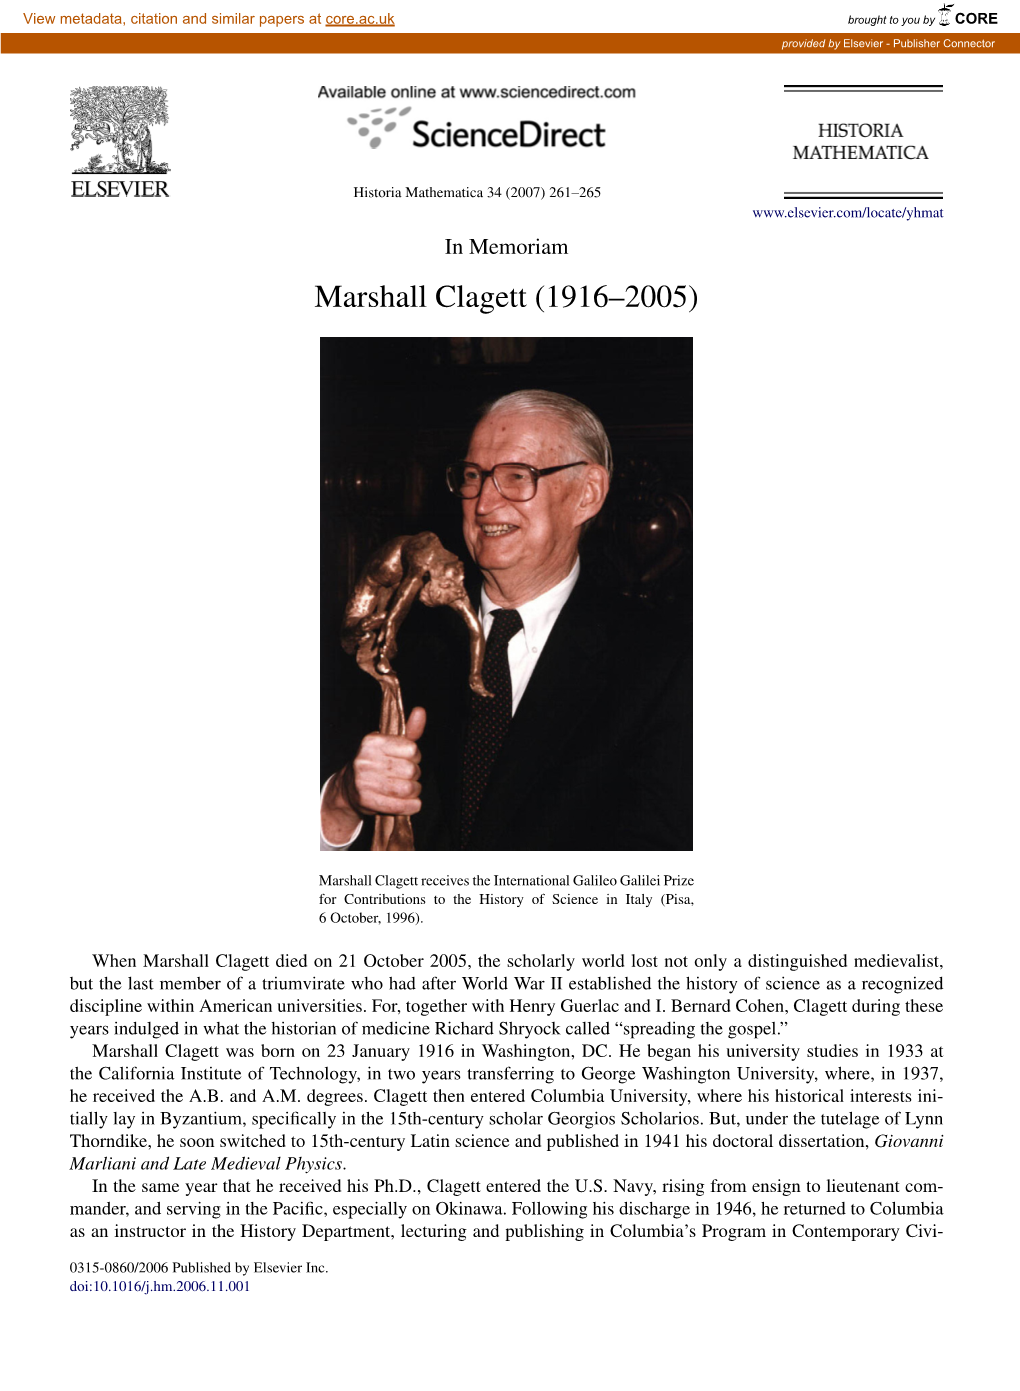 Marshall Clagett (1916–2005)